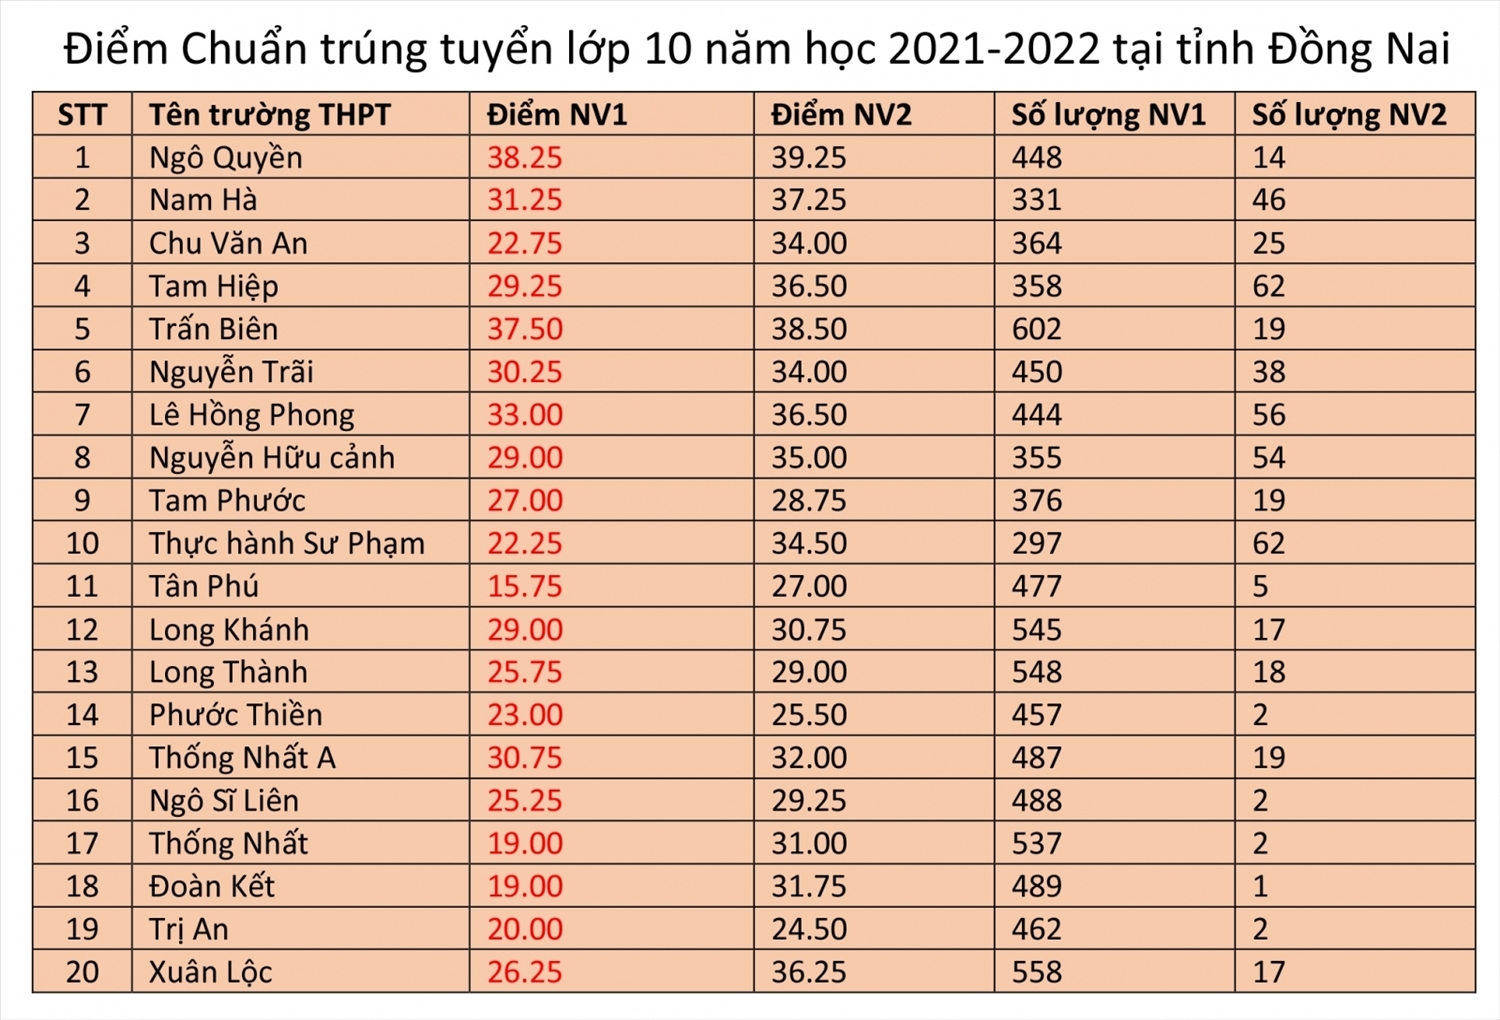 Các tỉnh, thành phố công bố điểm tuyển sinh vào lớp 10 năm học 2021-2022 2